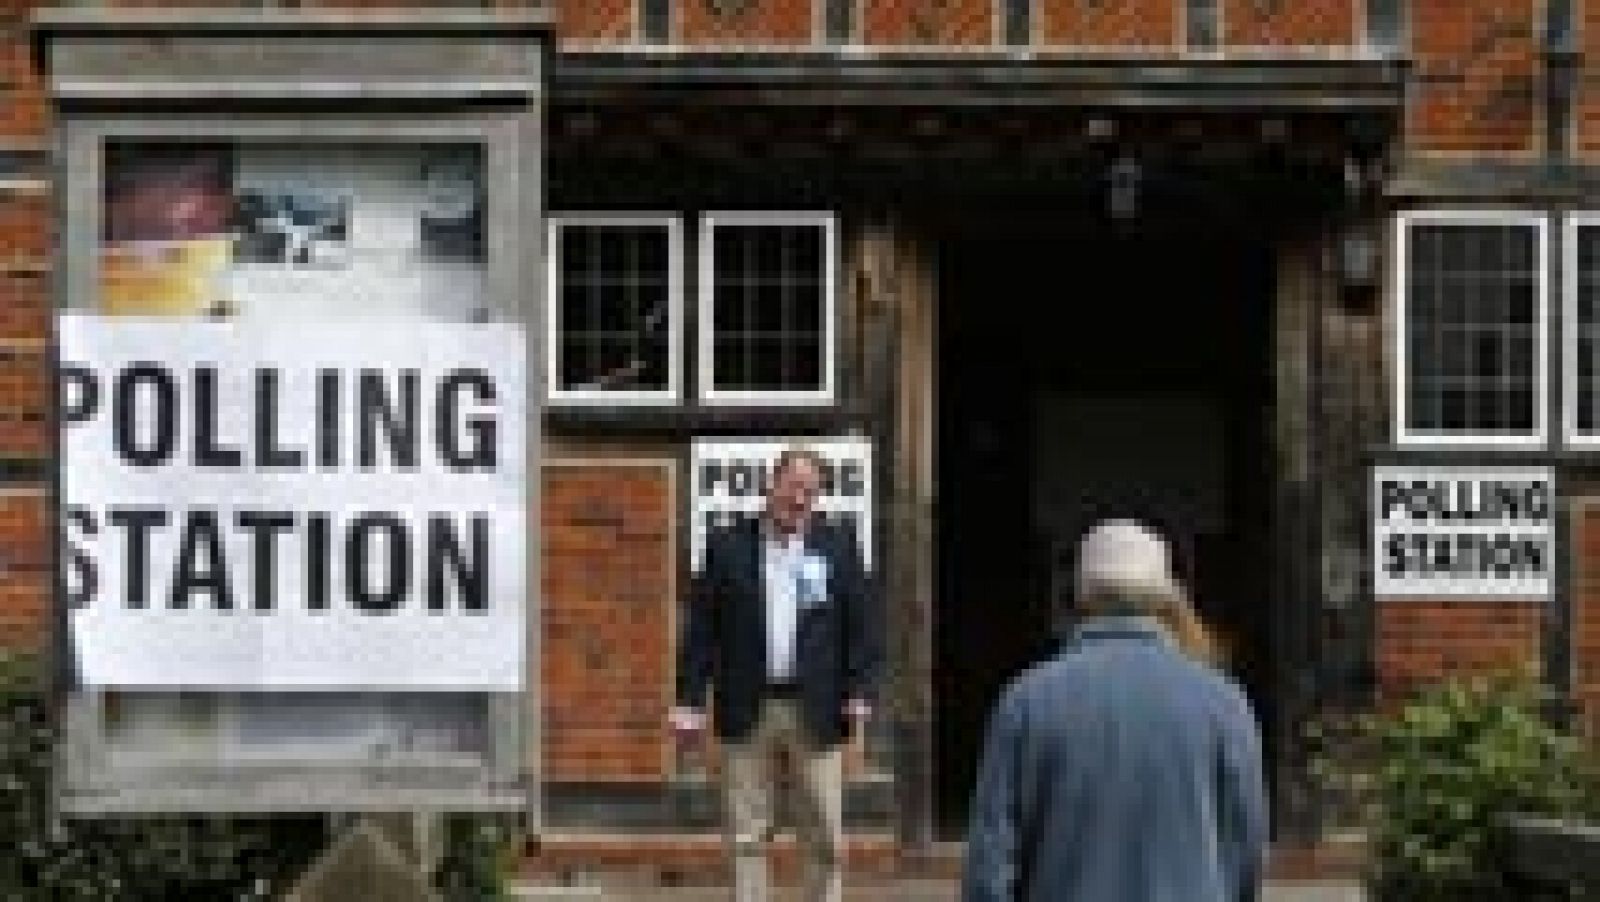 Los británicos votan en una de las elecciones más reñidas de las últimas décadas